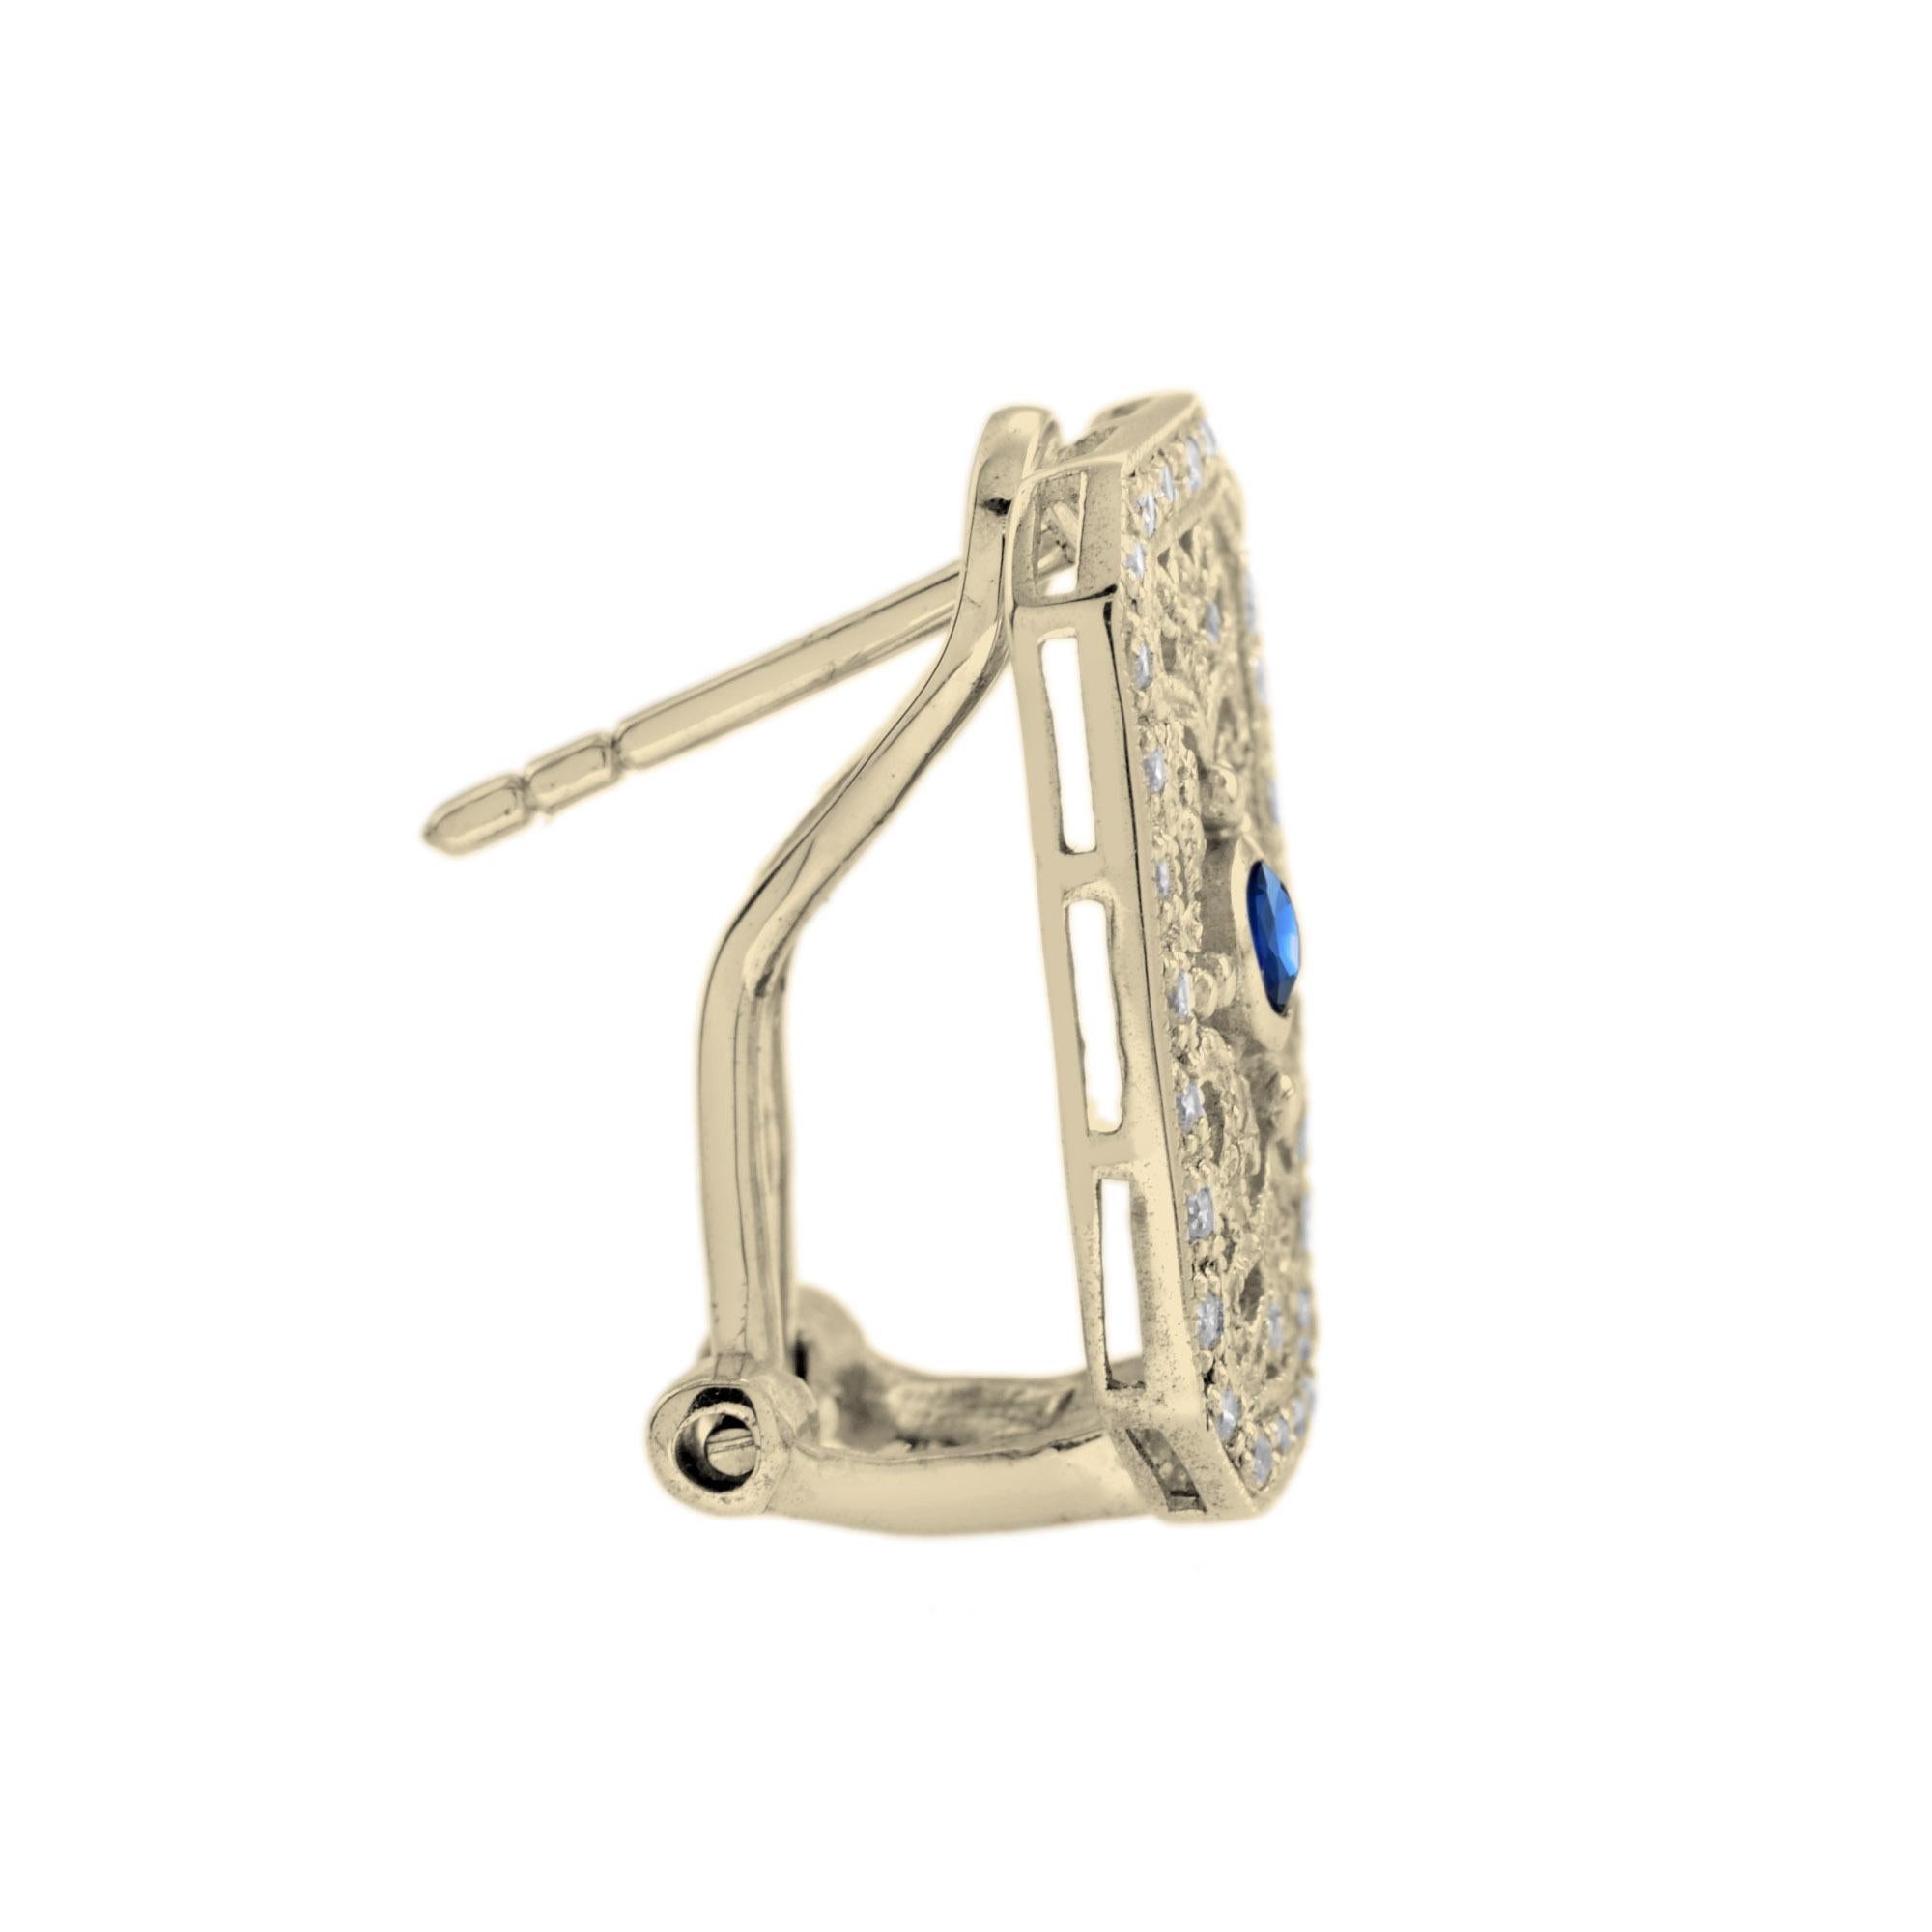 Mit einem blauen Saphir von 0,15 Karat in der Mitte und einem verschnörkelten, von Vintage inspirierten Design passen diese Ohrringe zu jedem Outfit. Der farbenfrohe Mittelstein wird von funkelnden weißen Diamanten im Rundschliff mit einem